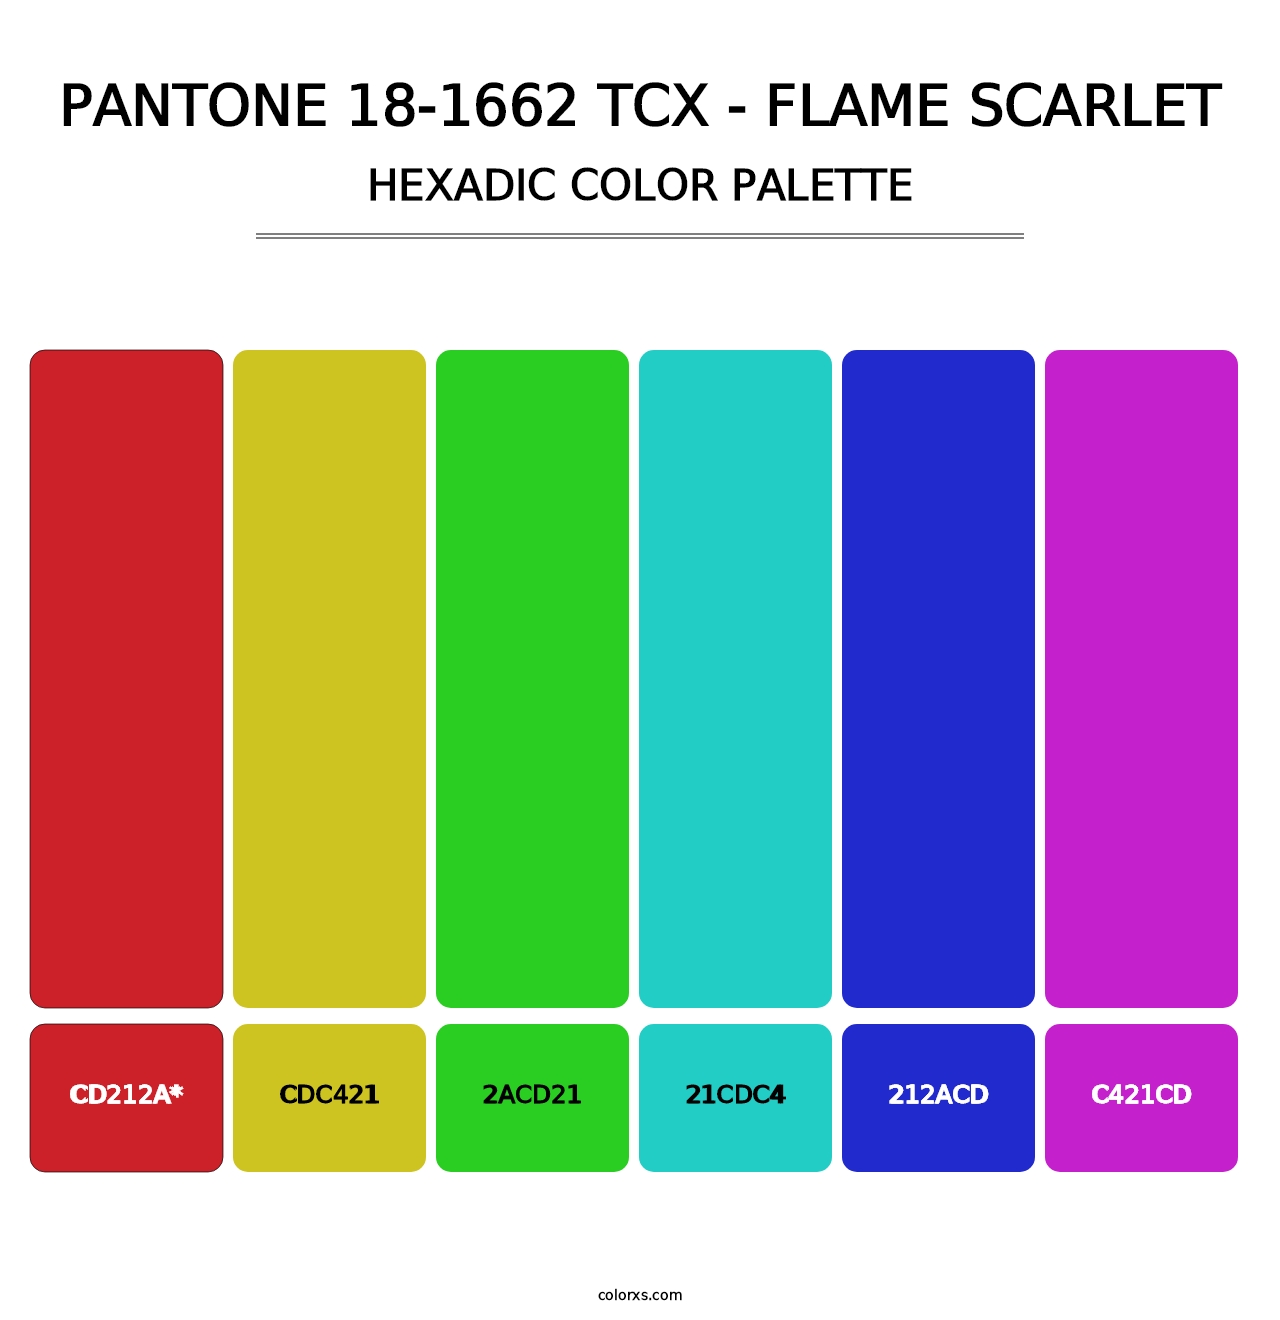 PANTONE 18-1662 TCX - Flame Scarlet - Hexadic Color Palette